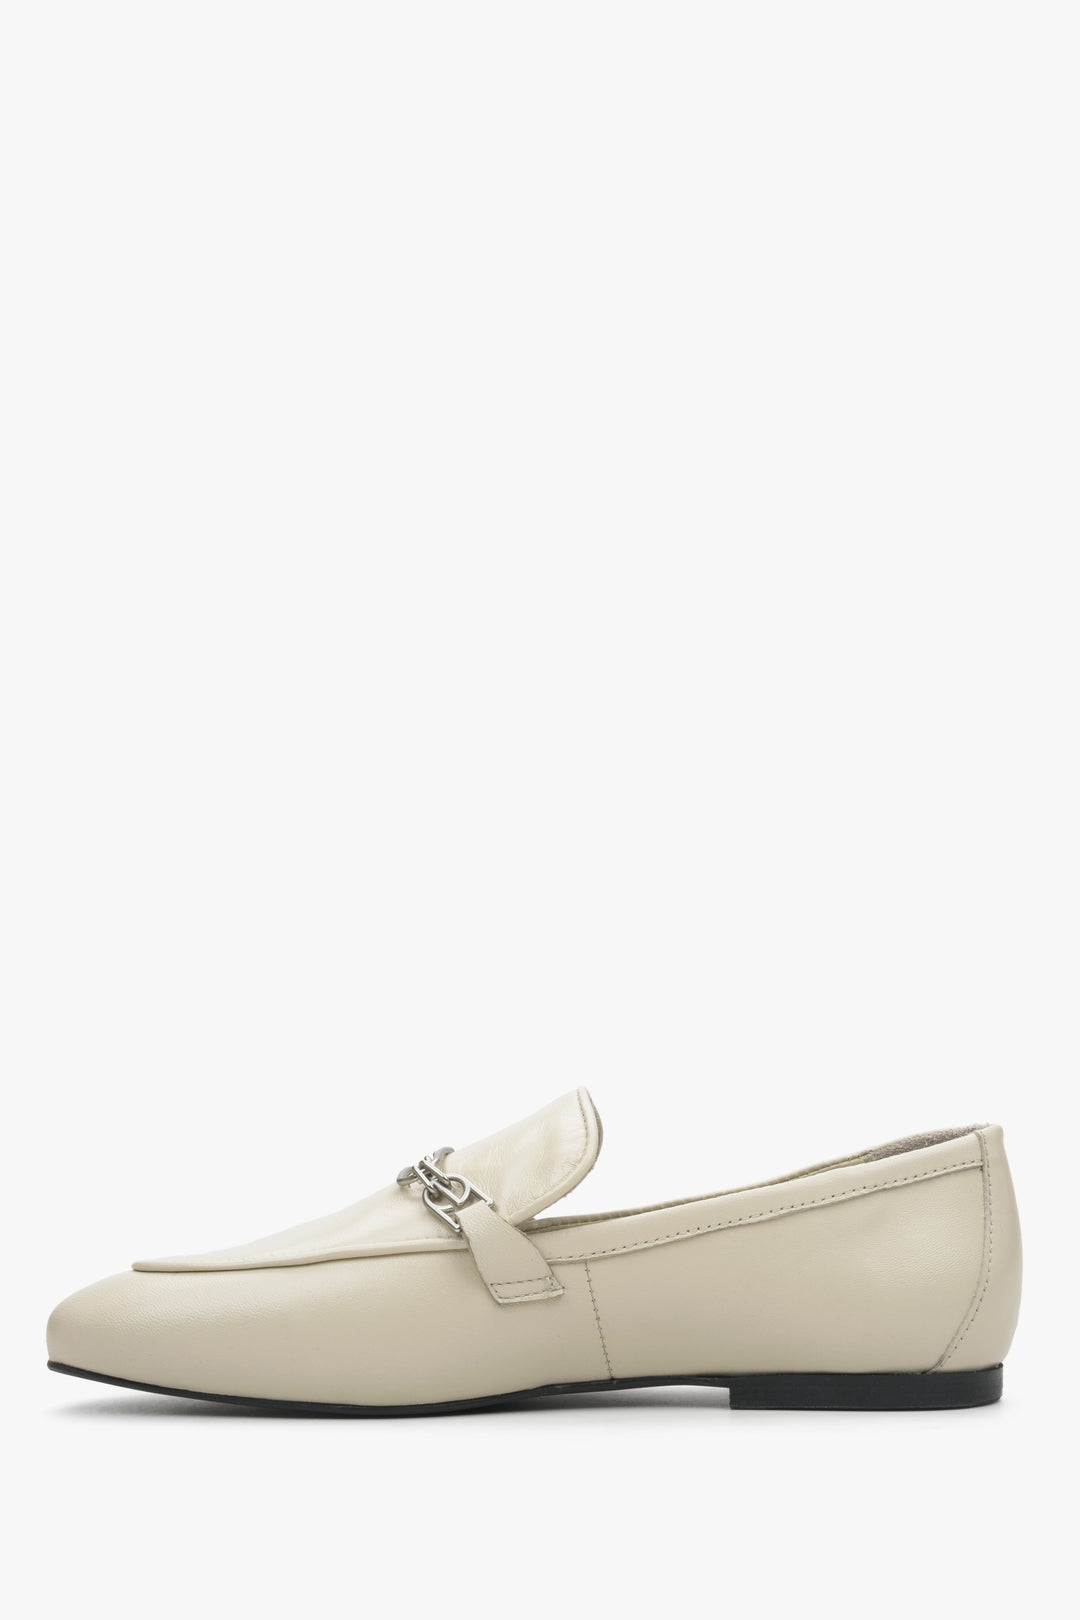 Women's light beige penny loafers Estro - shoe profile.